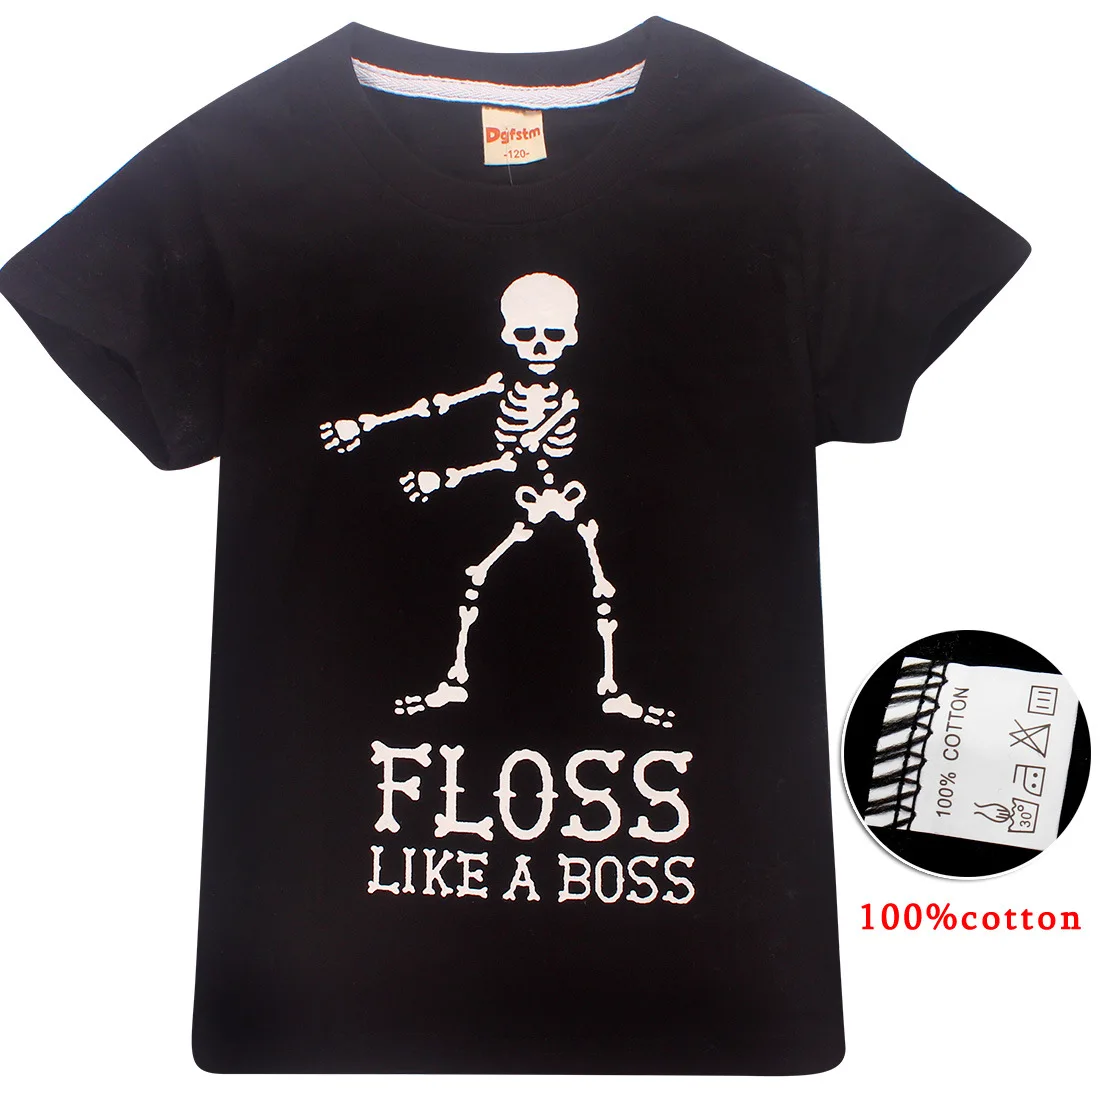 Популярная детская футболка с принтом «Fortnight»; детская футболка; топы; футболки с принтом «Fortress Night»; костюм для танцев «Like a Boss» для мальчиков и девочек - Цвет: Черный